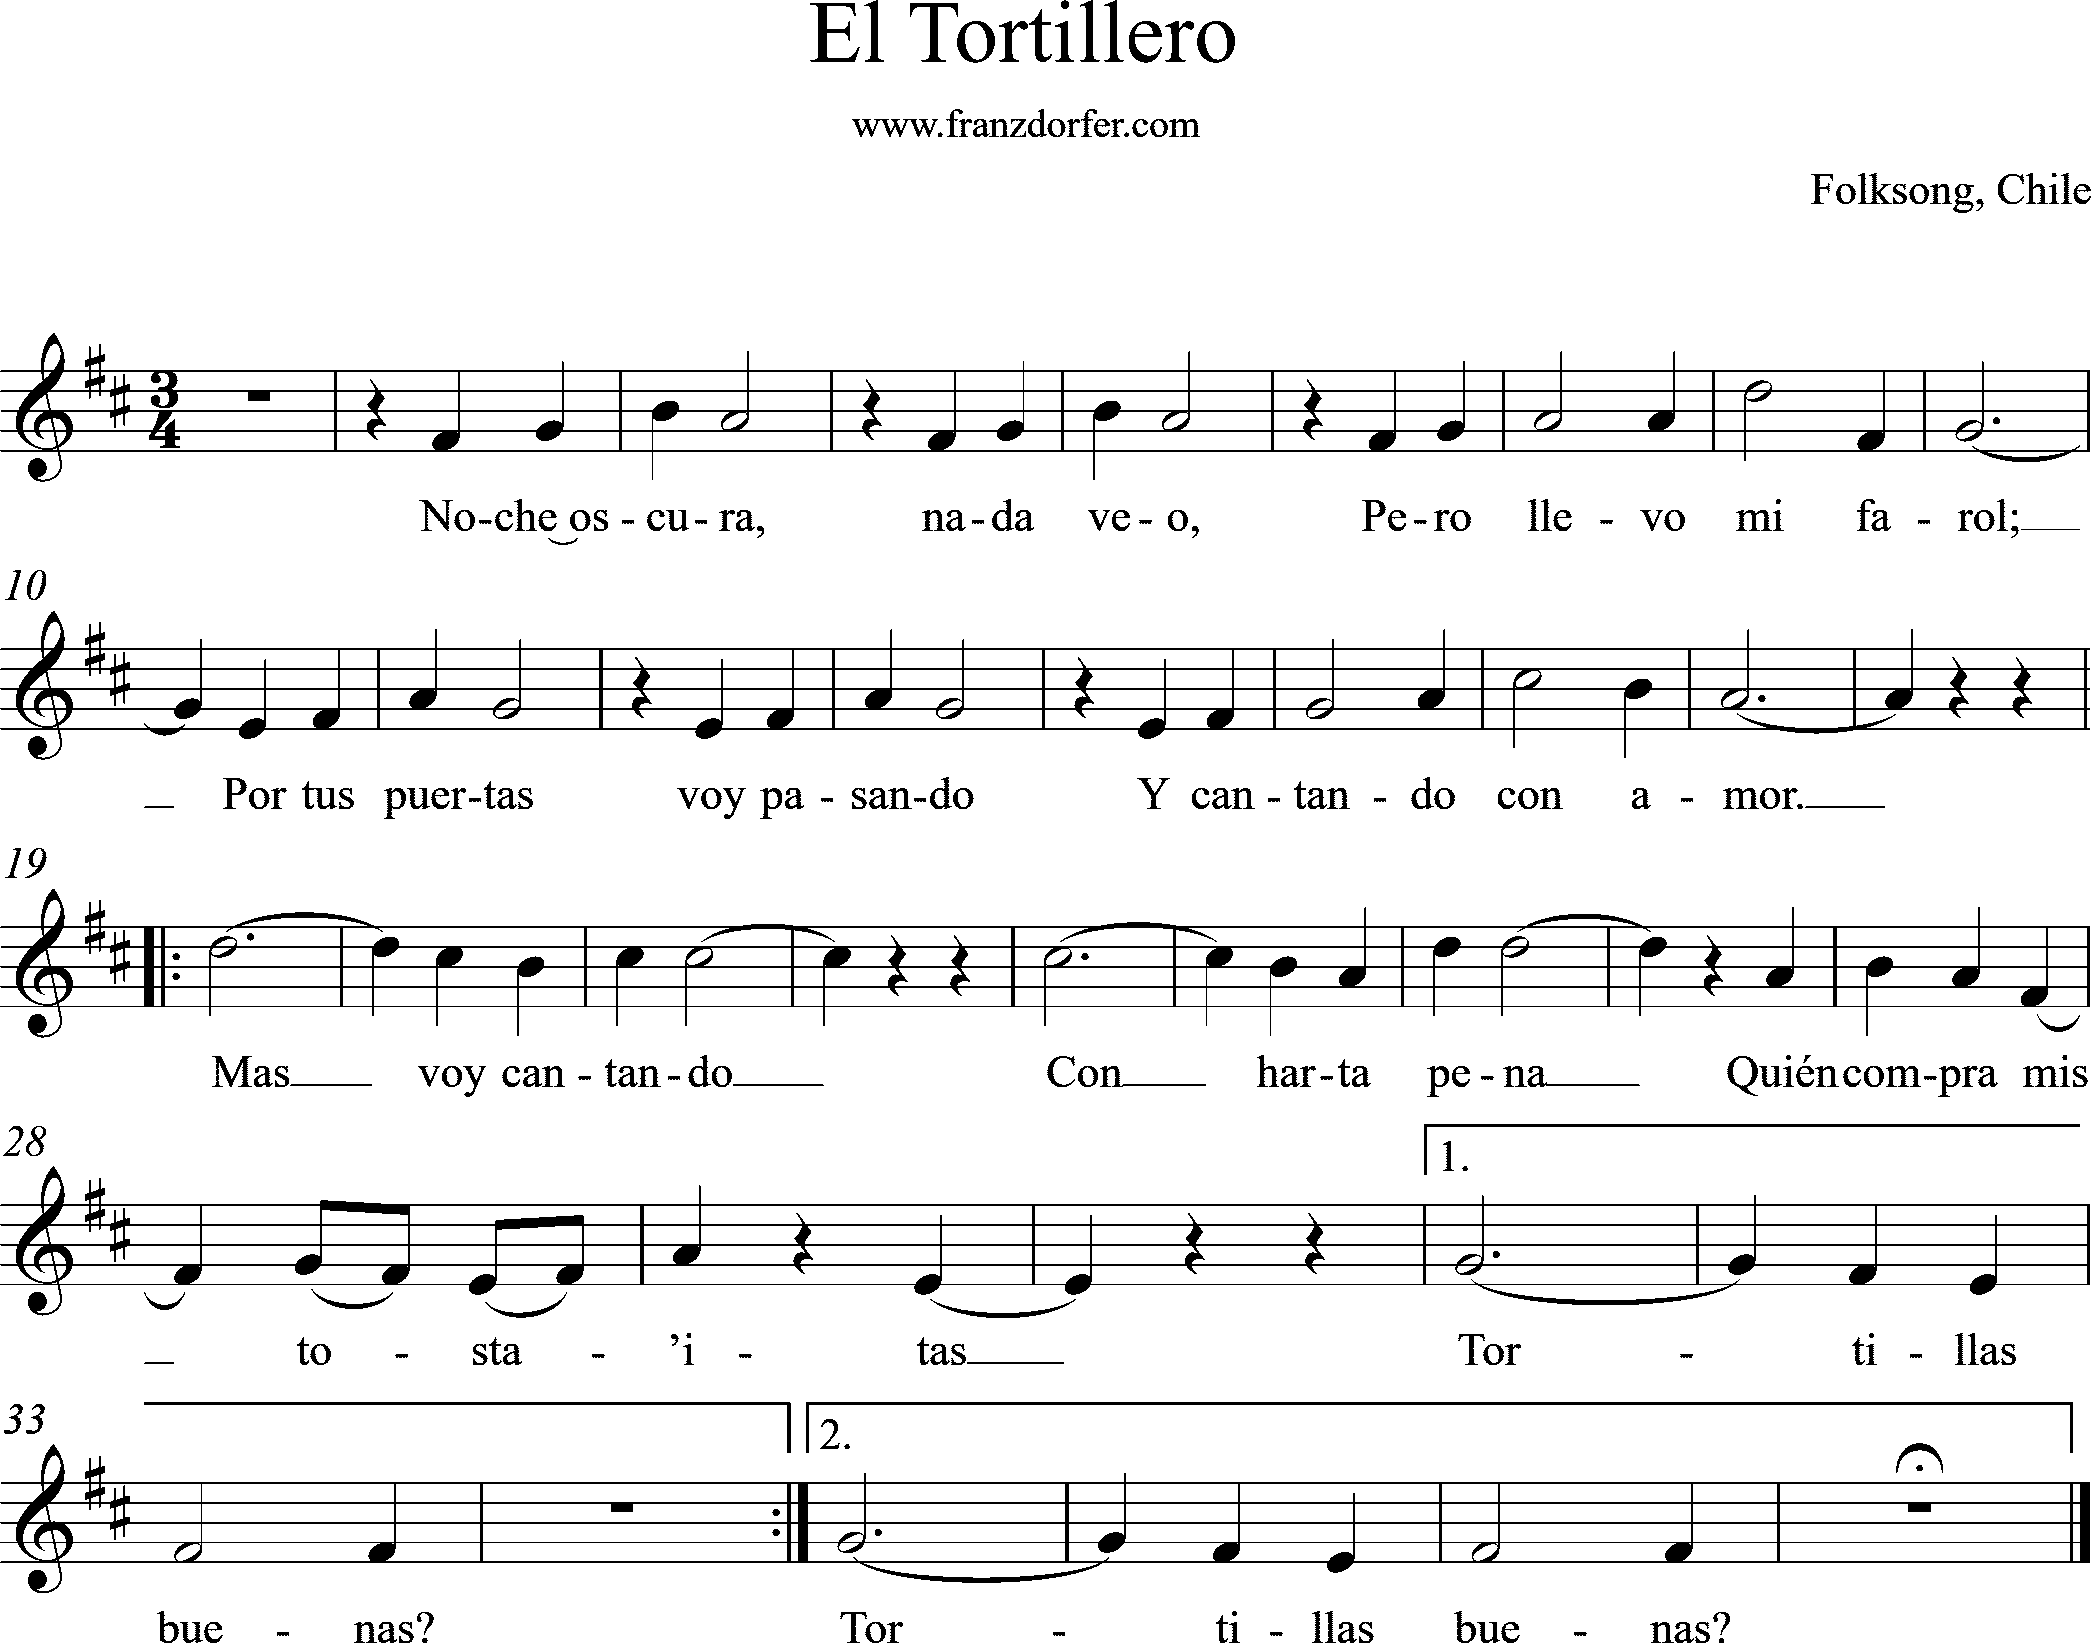 shhetmusic- El Tortillero